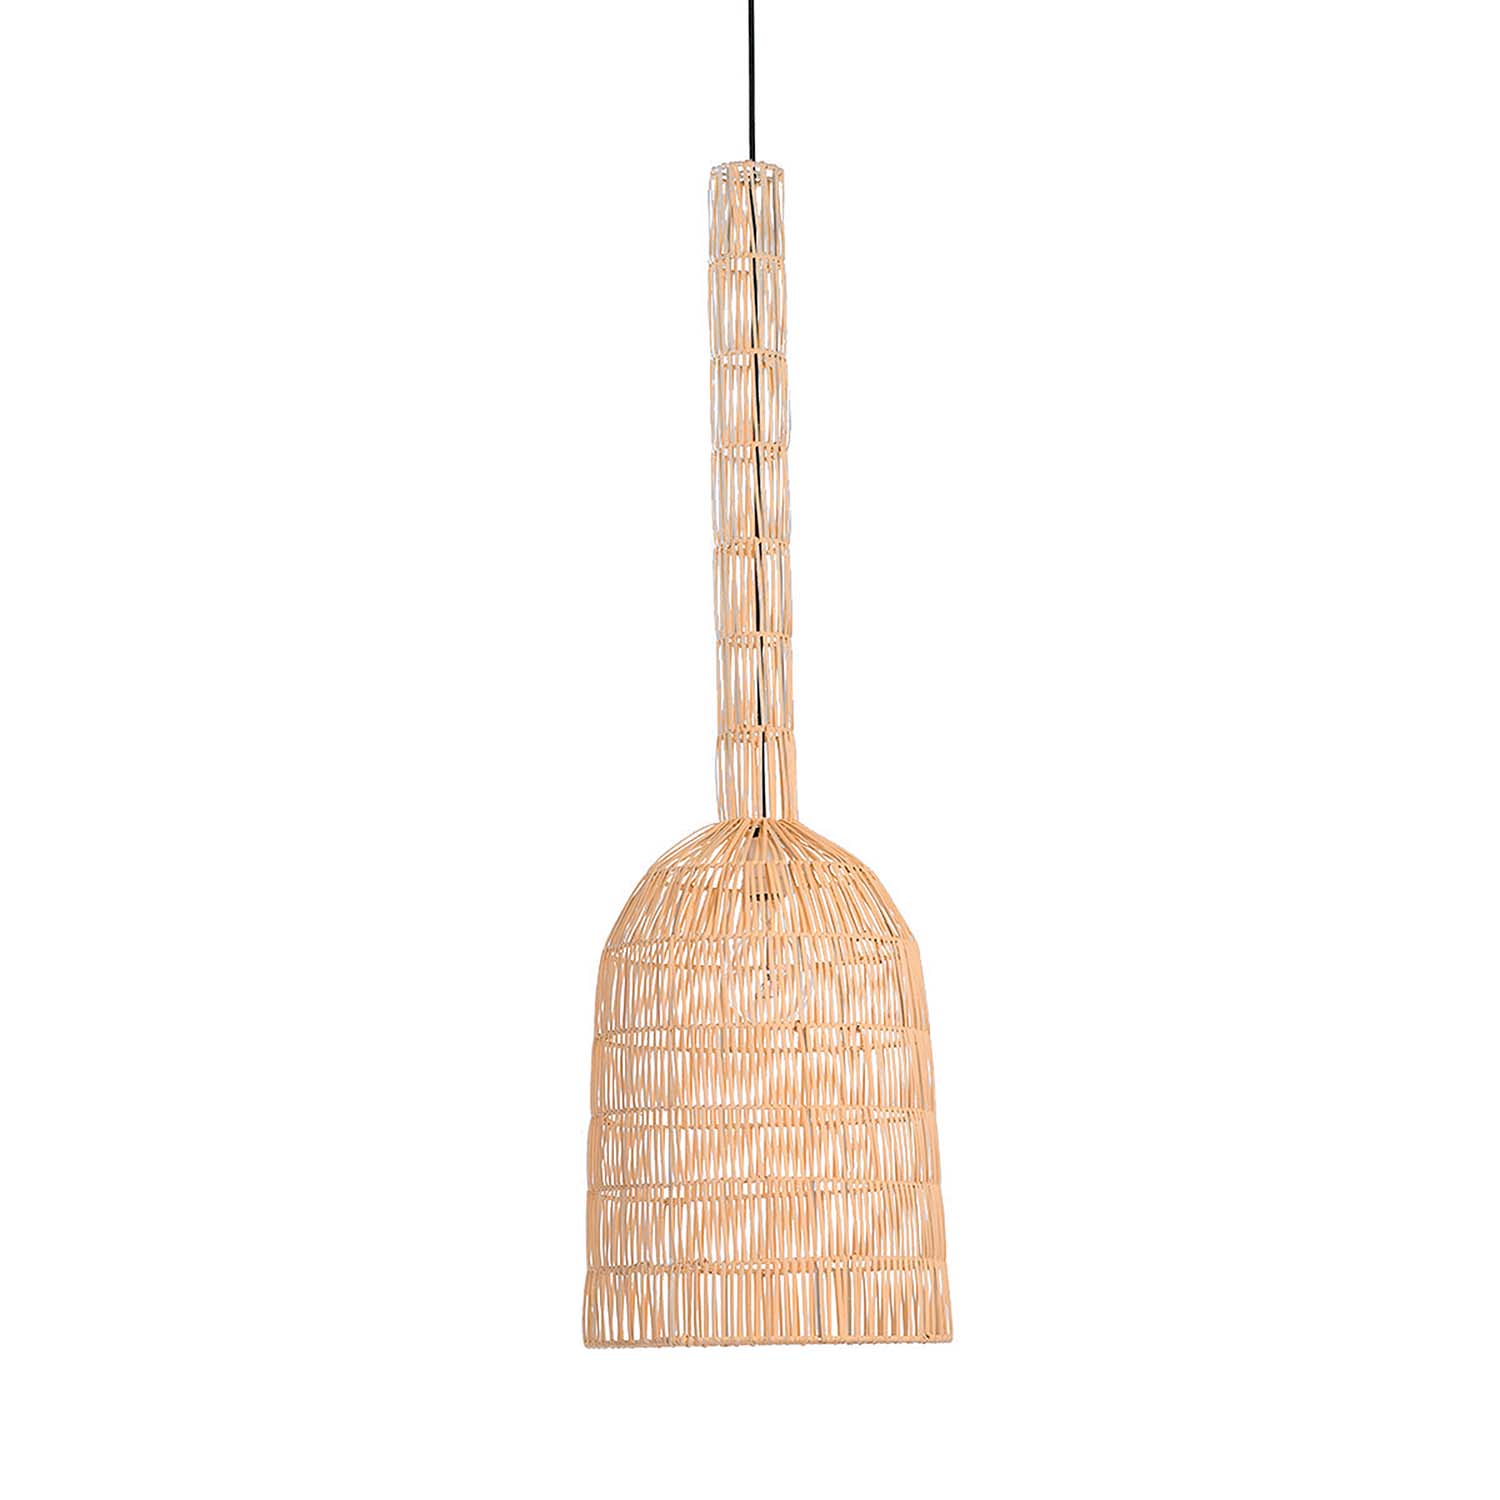 UMUT 2R - Bell pendant light in beige or black woven bamboo